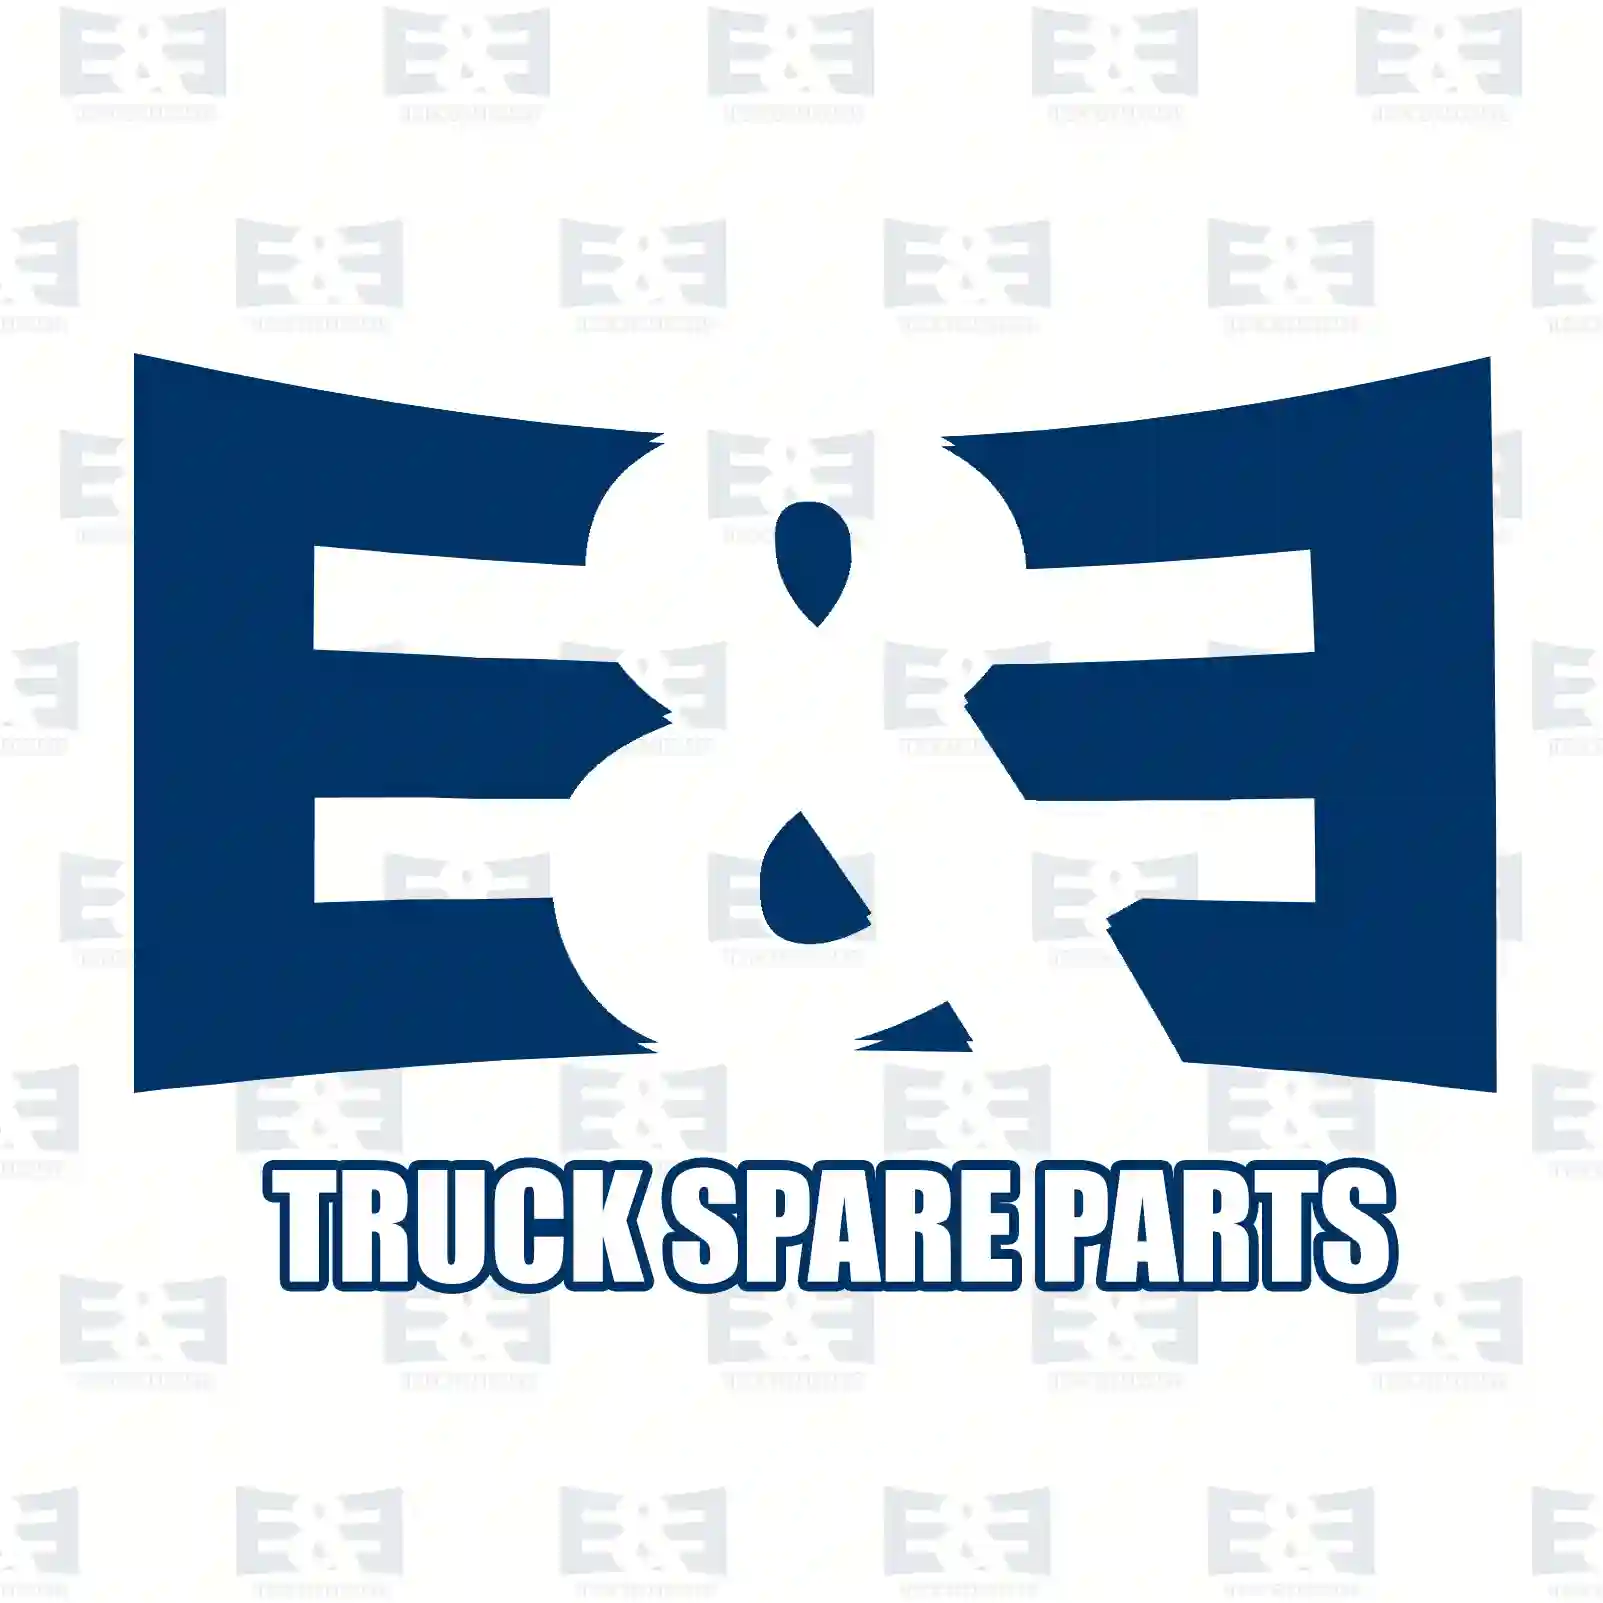 Brake drum, 2E2296378, 424738, 1306211080, 424738, , , , , ||  2E2296378 E&E Truck Spare Parts | Truck Spare Parts, Auotomotive Spare Parts Brake drum, 2E2296378, 424738, 1306211080, 424738, , , , , ||  2E2296378 E&E Truck Spare Parts | Truck Spare Parts, Auotomotive Spare Parts